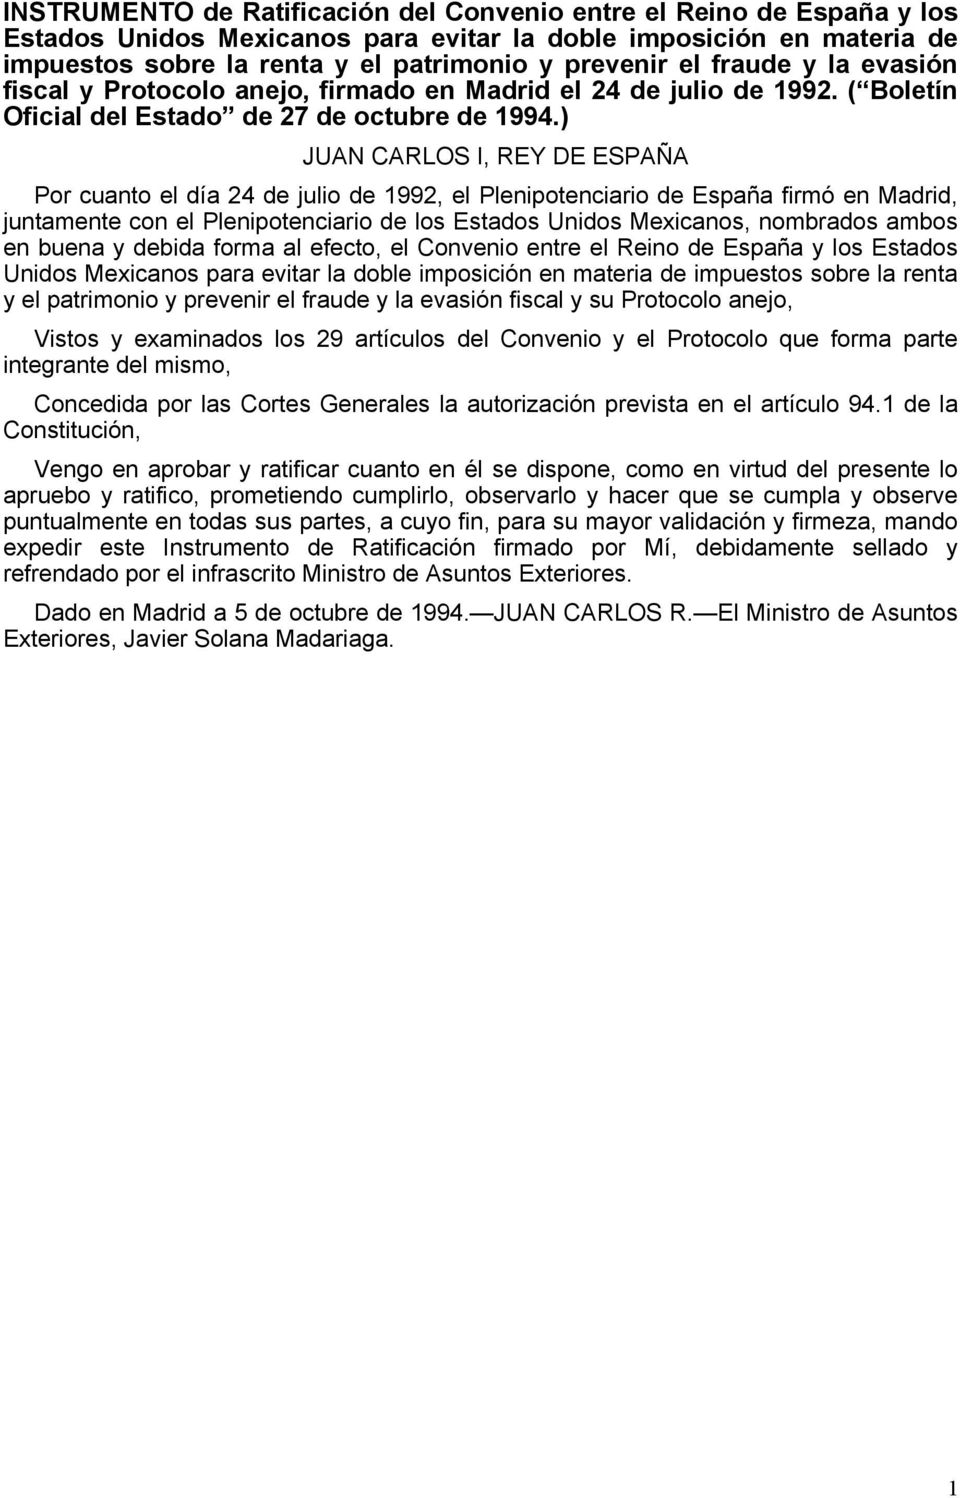 ) JUAN CARLOS I, REY DE ESPAÑA Por cuanto el día 24 de julio de 1992, el Plenipotenciario de España firmó en Madrid, juntamente con el Plenipotenciario de los Estados Unidos Mexicanos, nombrados